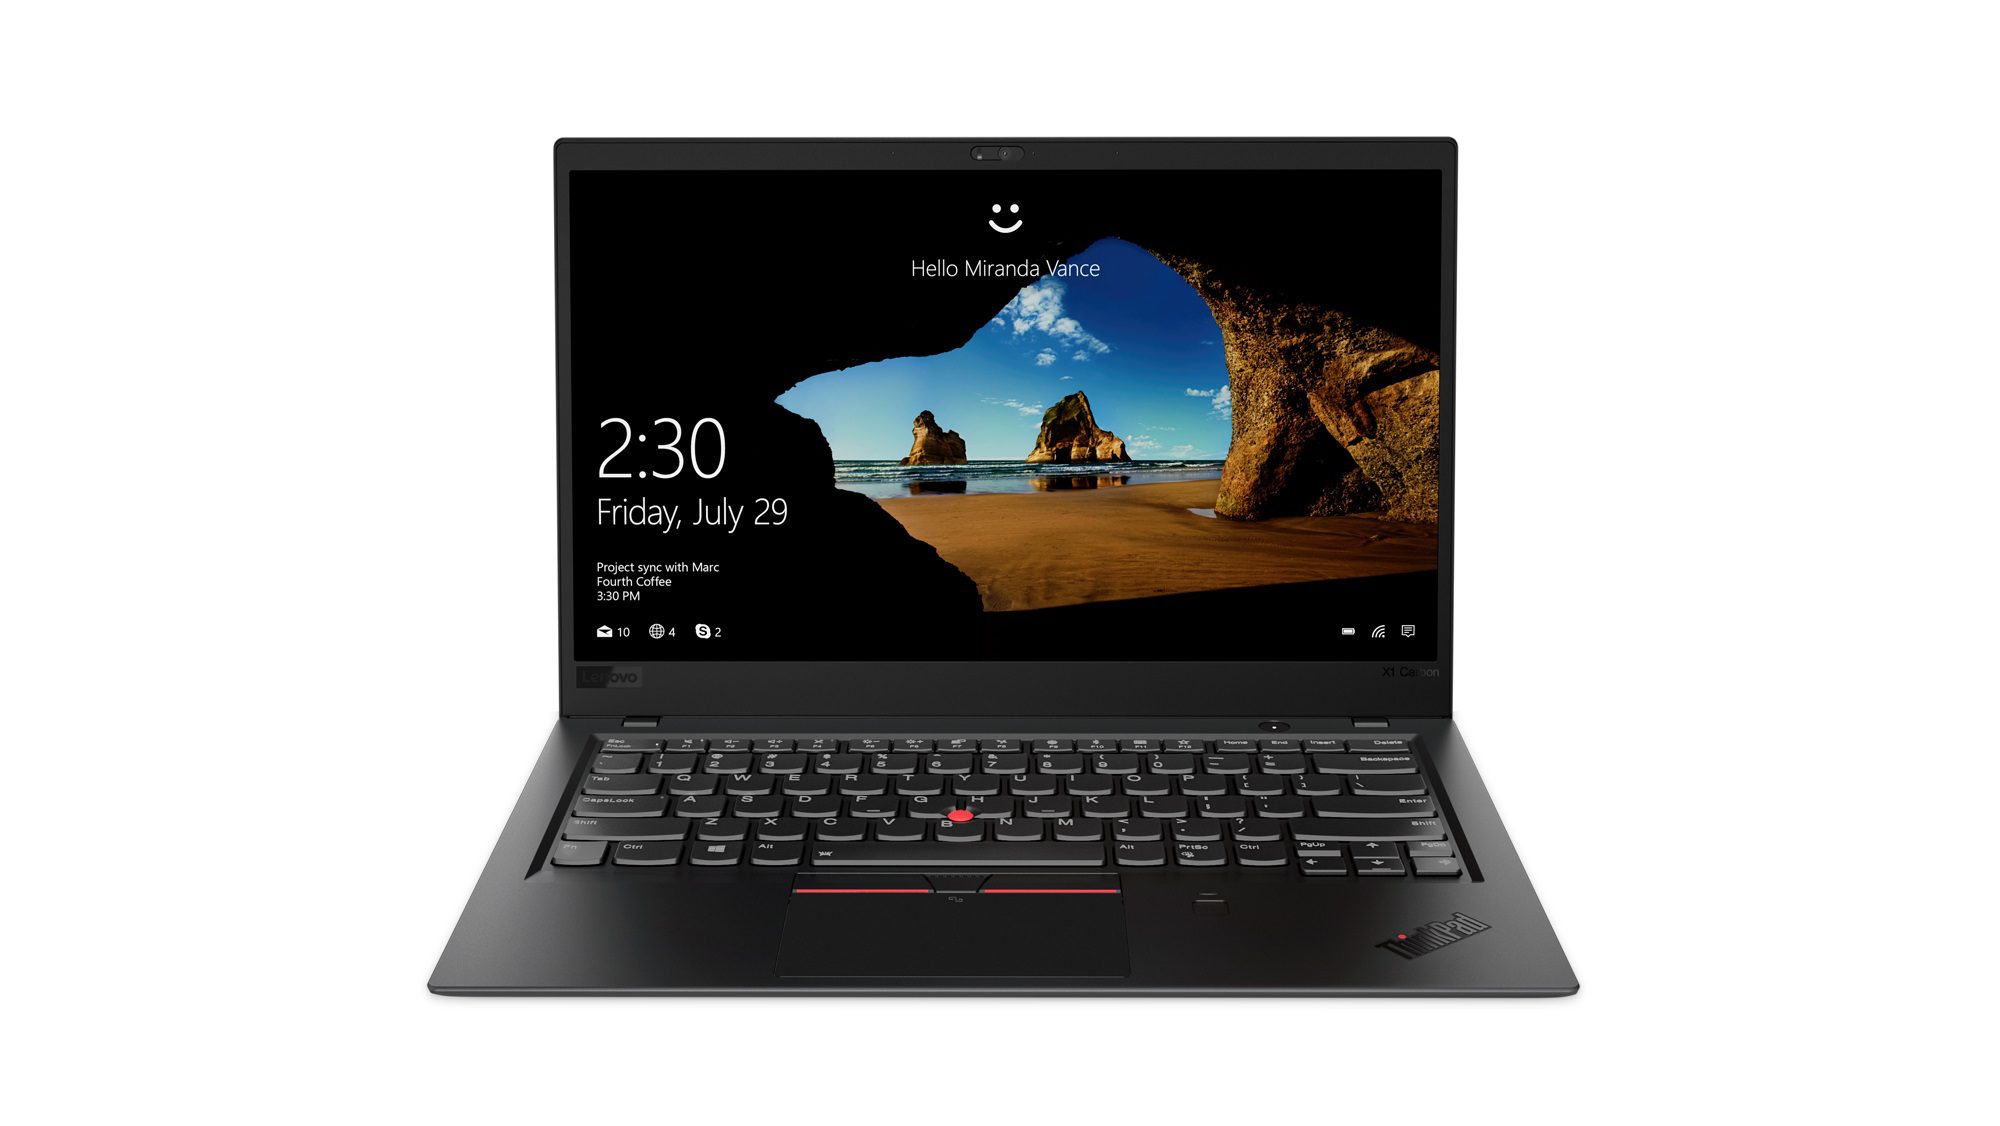 Las nuevas ThinkPad X1 Carbon, X1 Yoga y X1 Tablet tienen pantallas impresionantes y Alexa